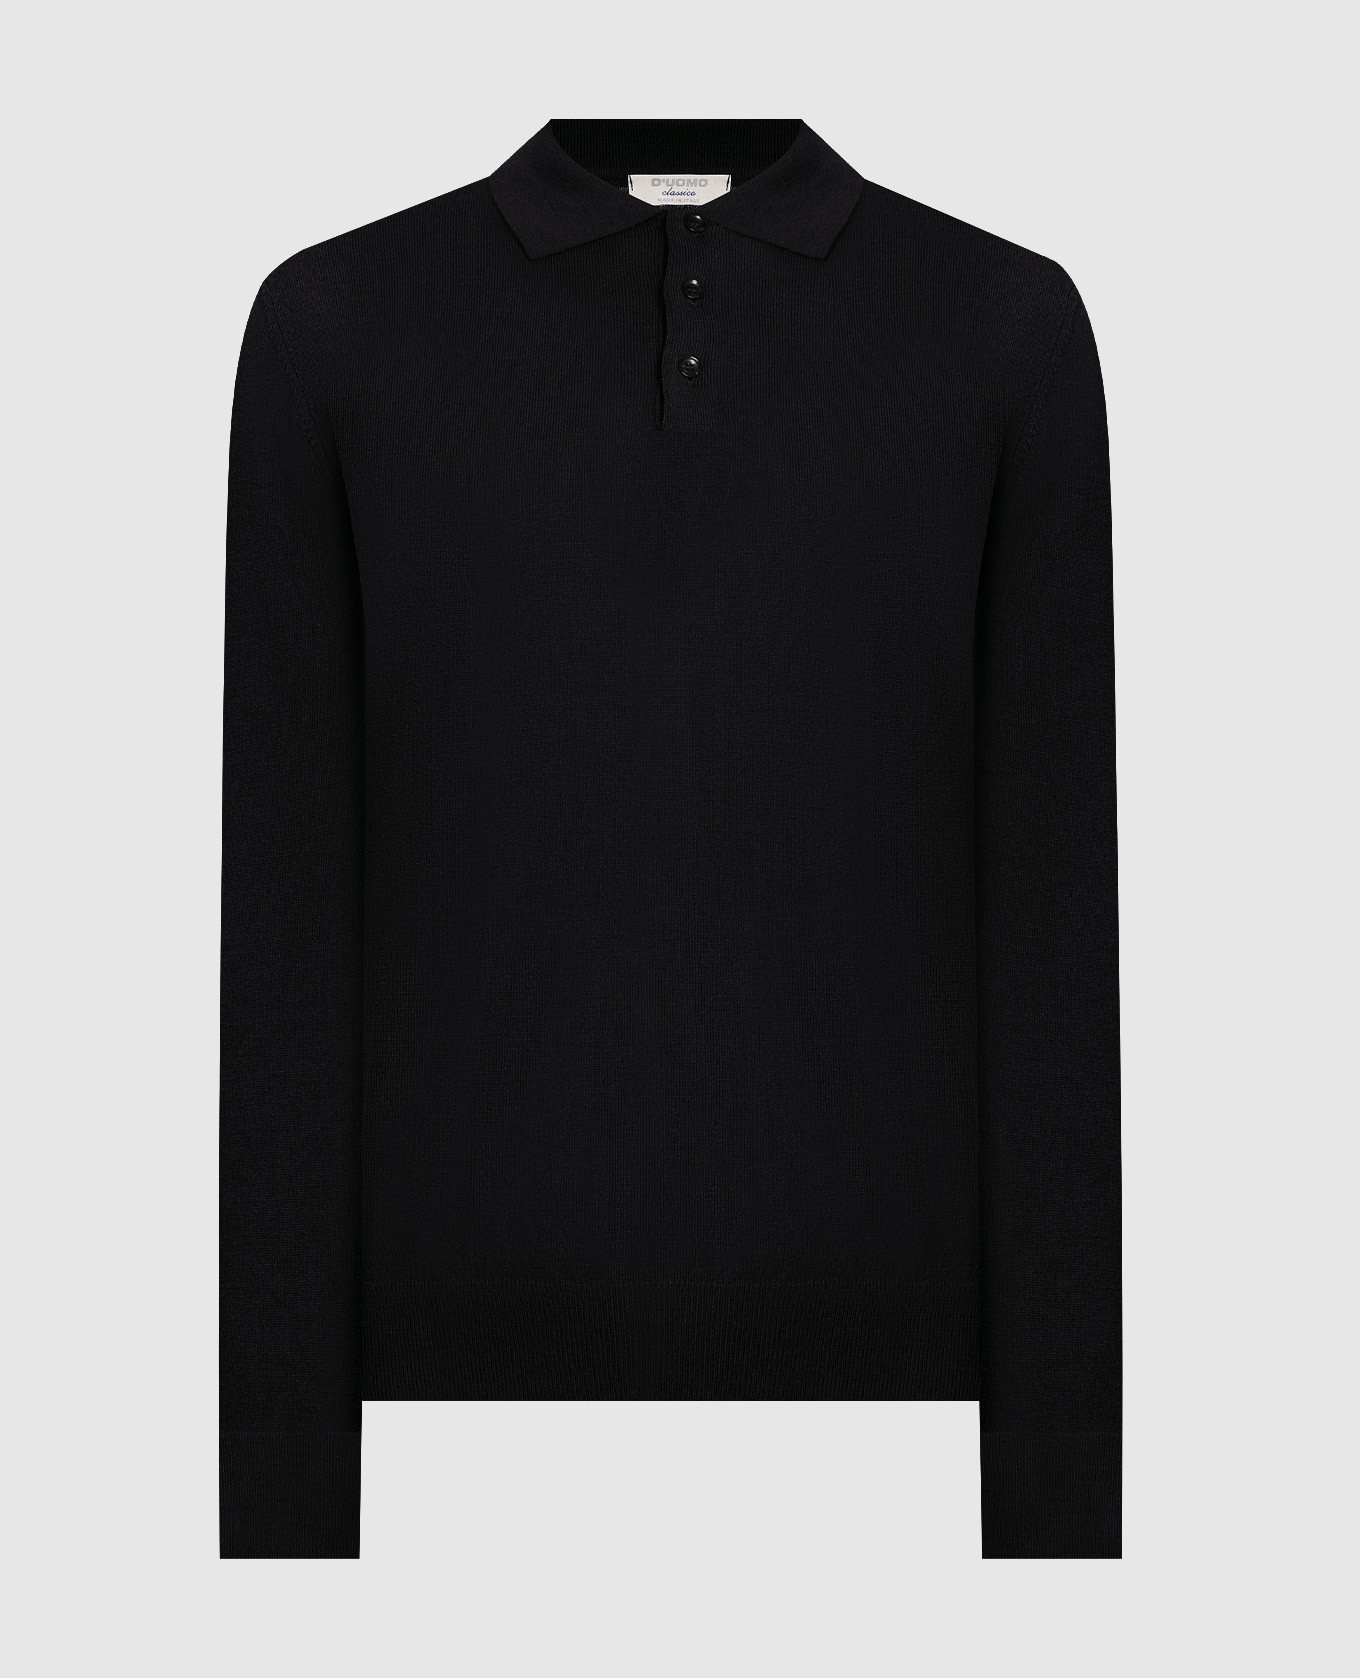 Black merino wool polo shirt